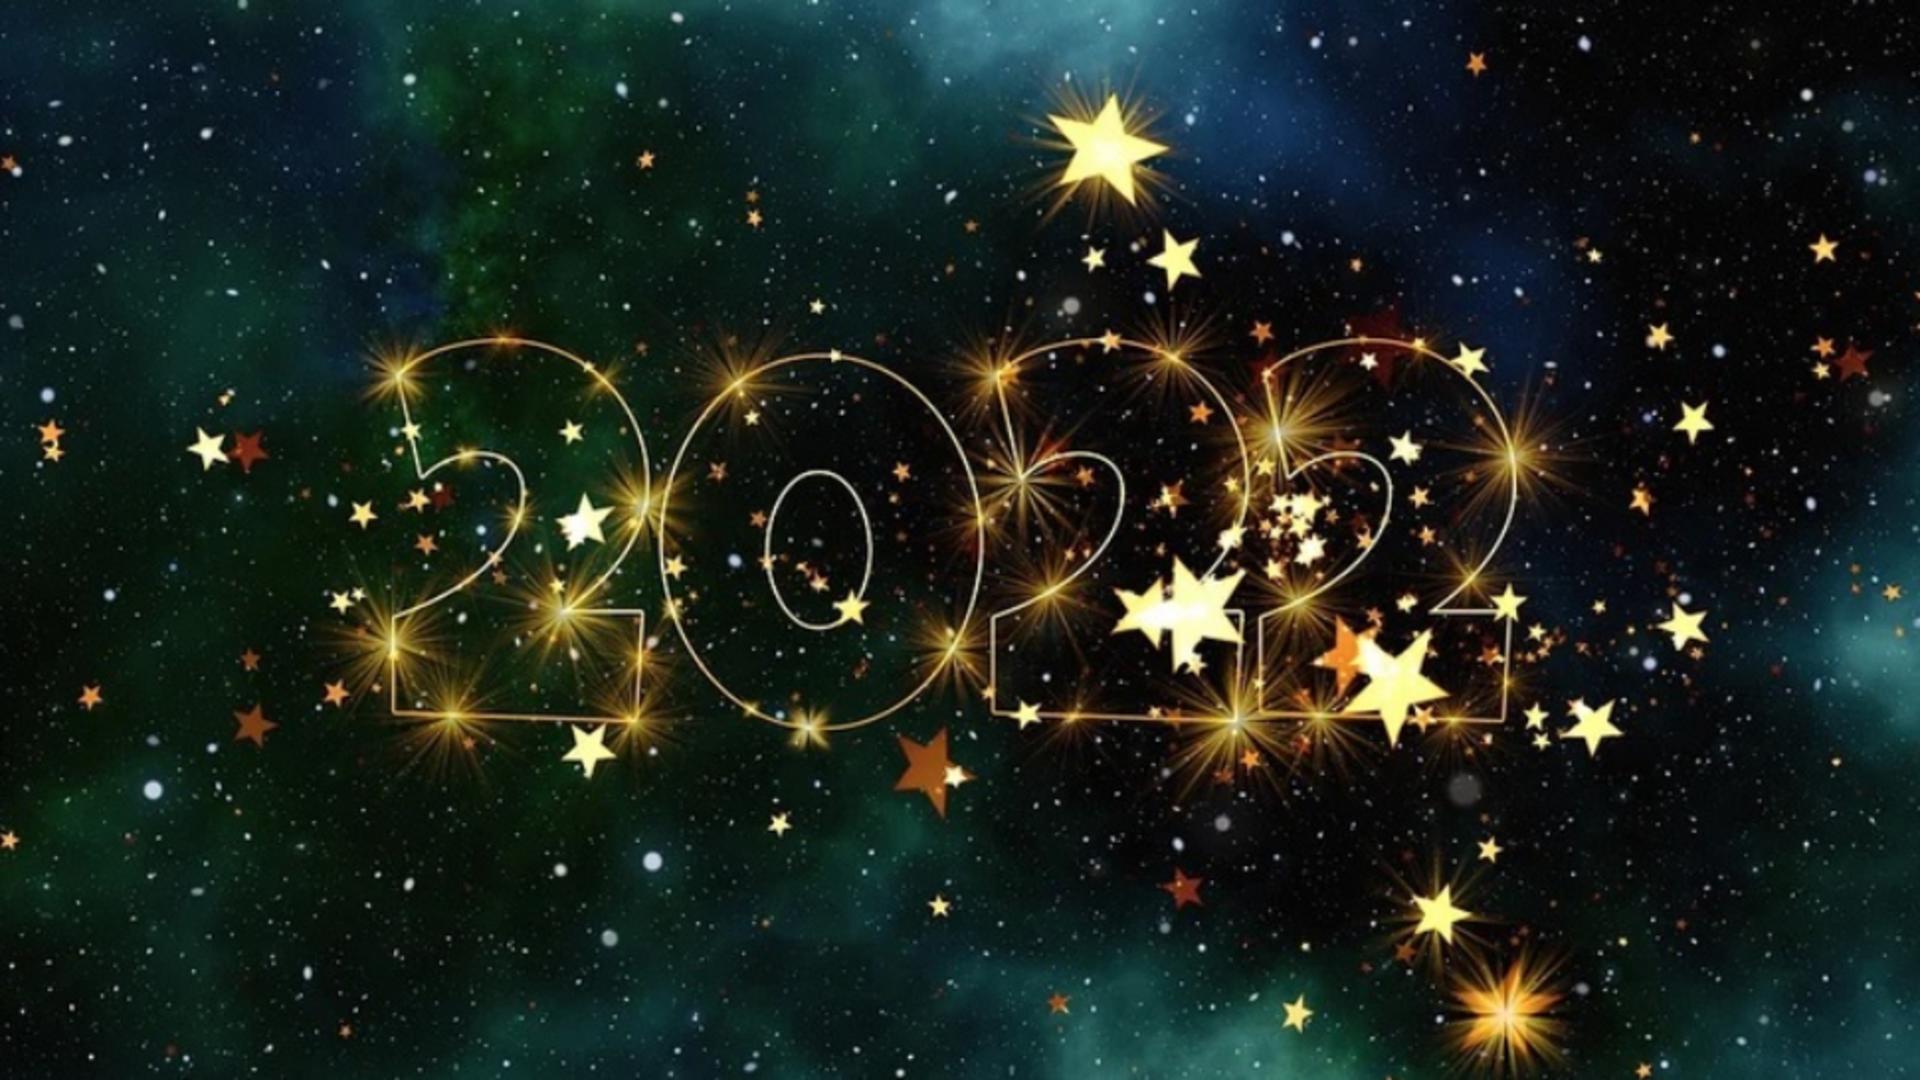 Horoscop 2022